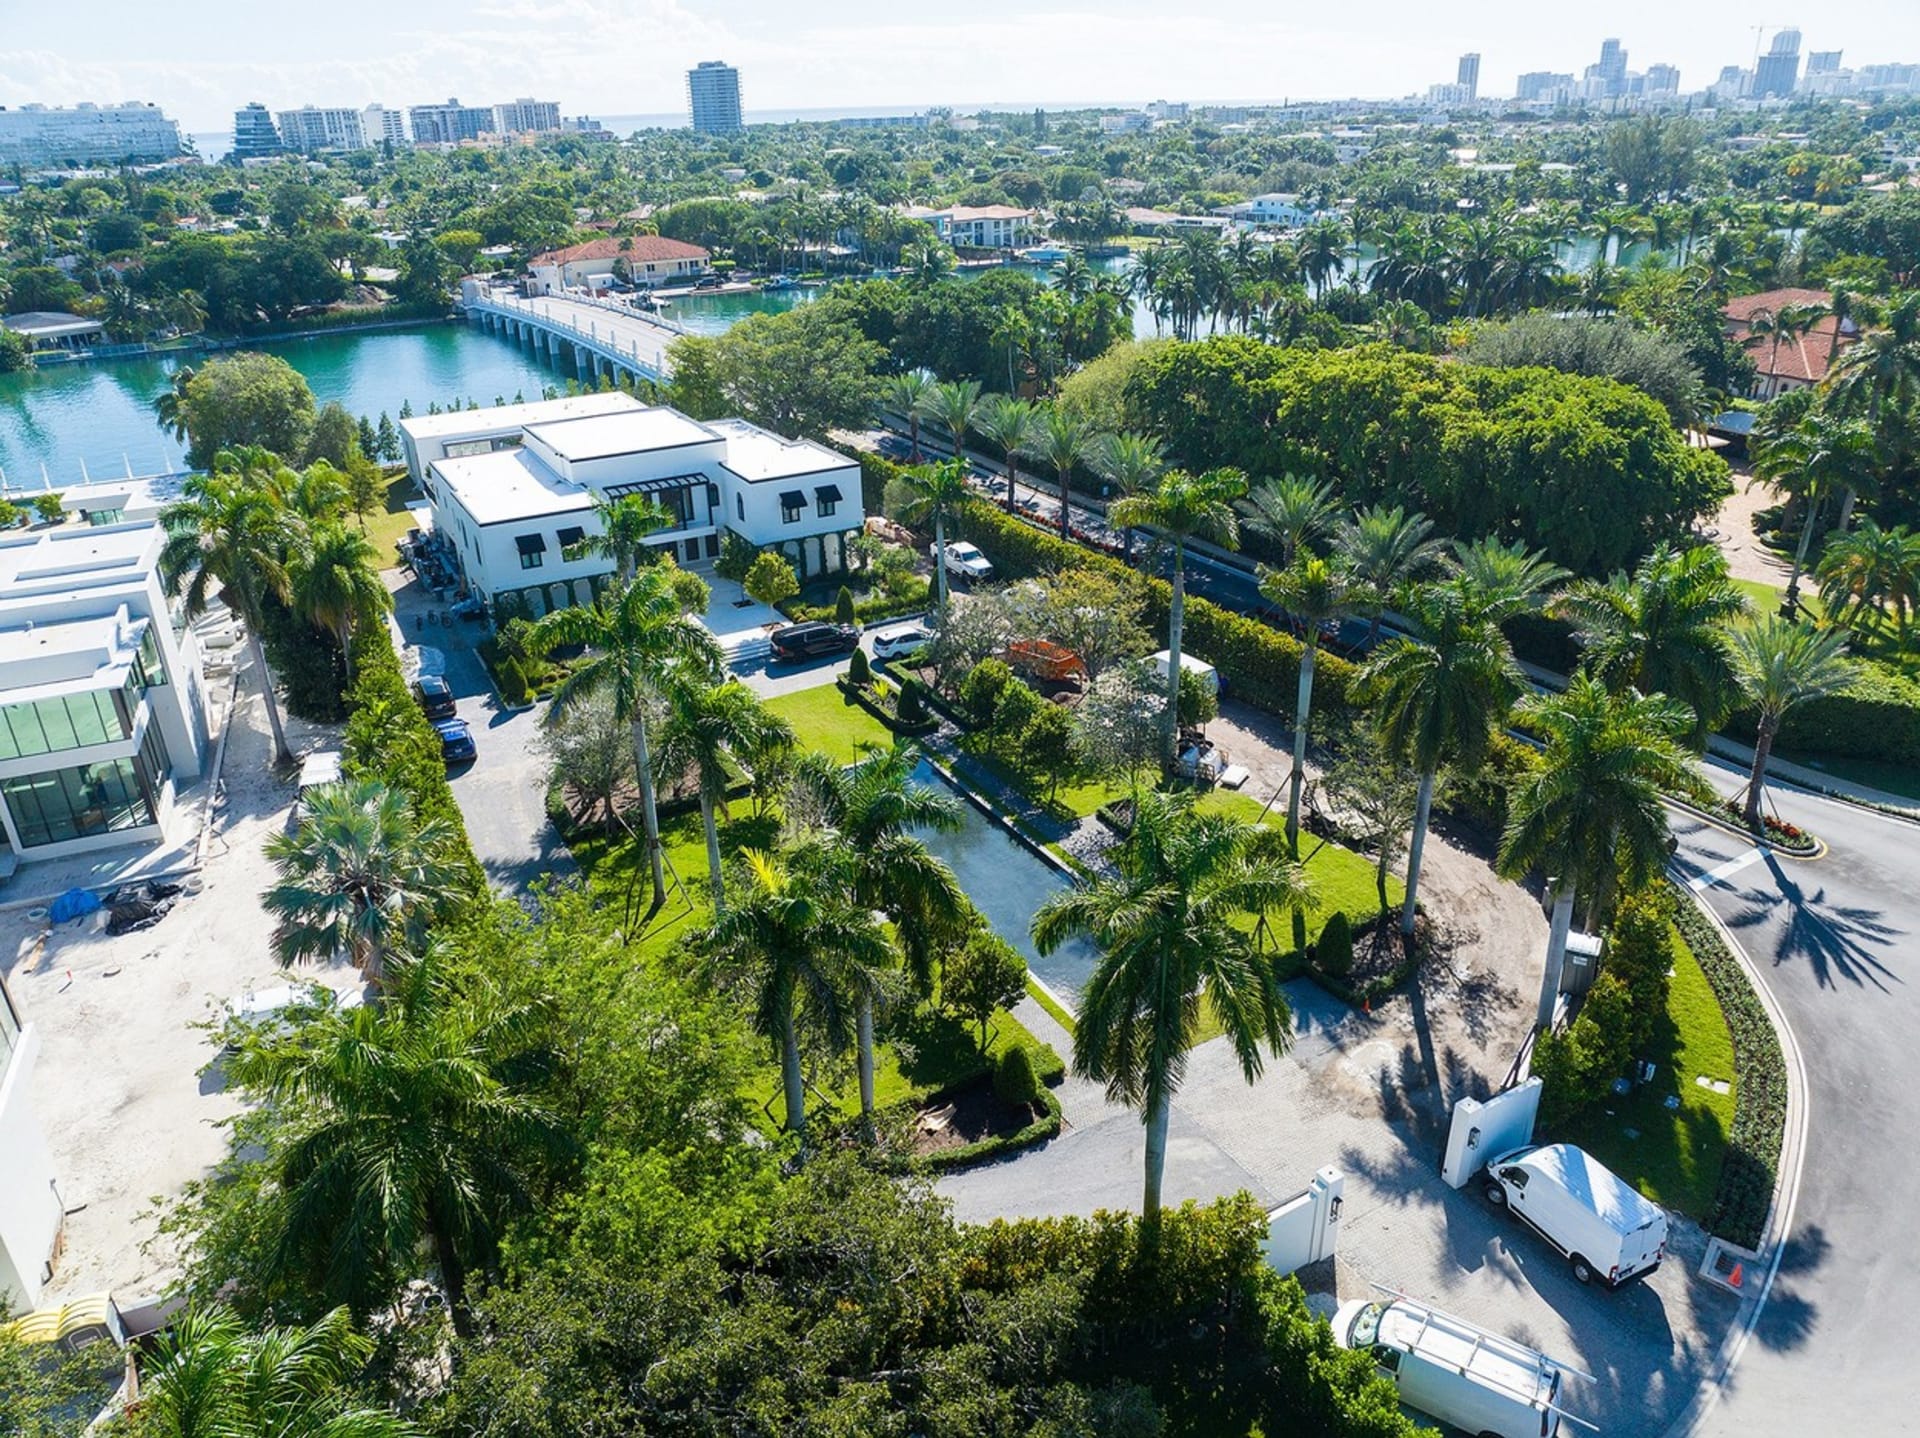 Rezidenci na Miami Beach ve francouzském neoklasicistním stylu s výhledem na Biscayne Bay, která je jen jedním z 34 domů v exkluzivní čtvrti známé jako Billionaire Bunker, koupili manželé v dubnu 2021 za 24 milionů dolarů, což je přibližně 530 milionů korun.